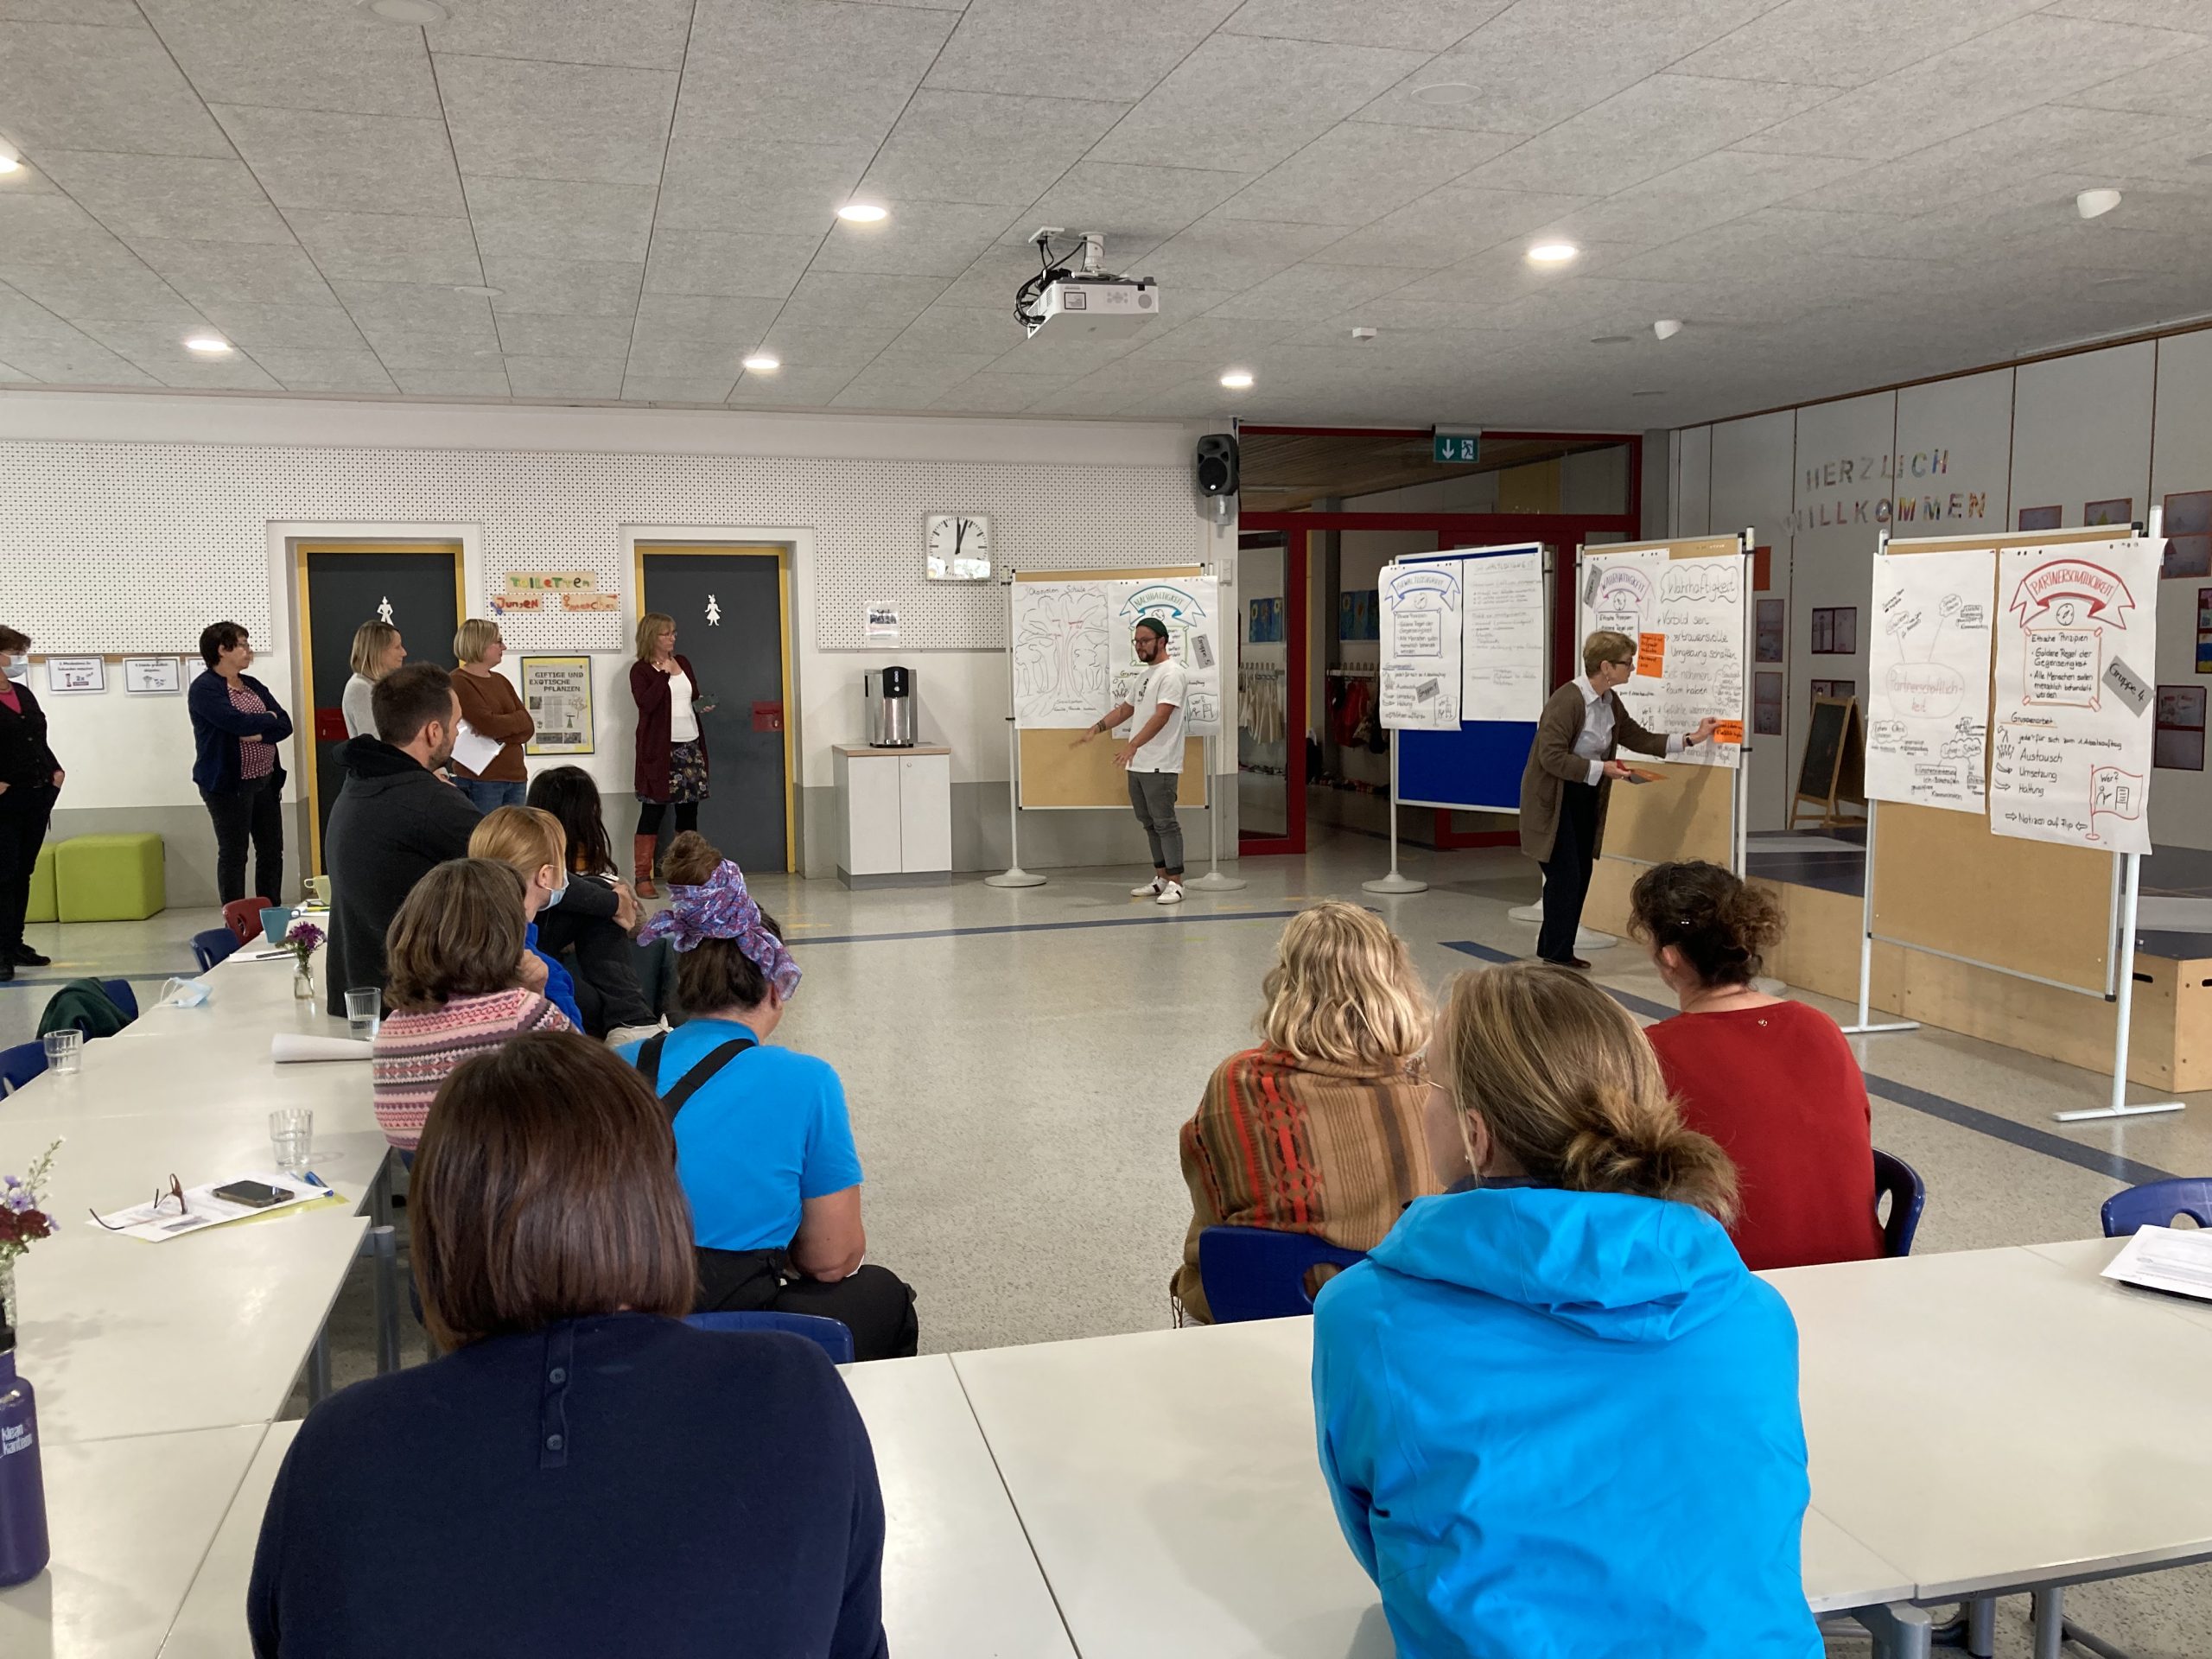 Das Bild zeigt Schüler*innen und Lehrer*innen vor Pinnwänden mit selbstgemachten Plakaten bei einem Workshop beim Pädagogischen Tag der Weltethos Stiftung.